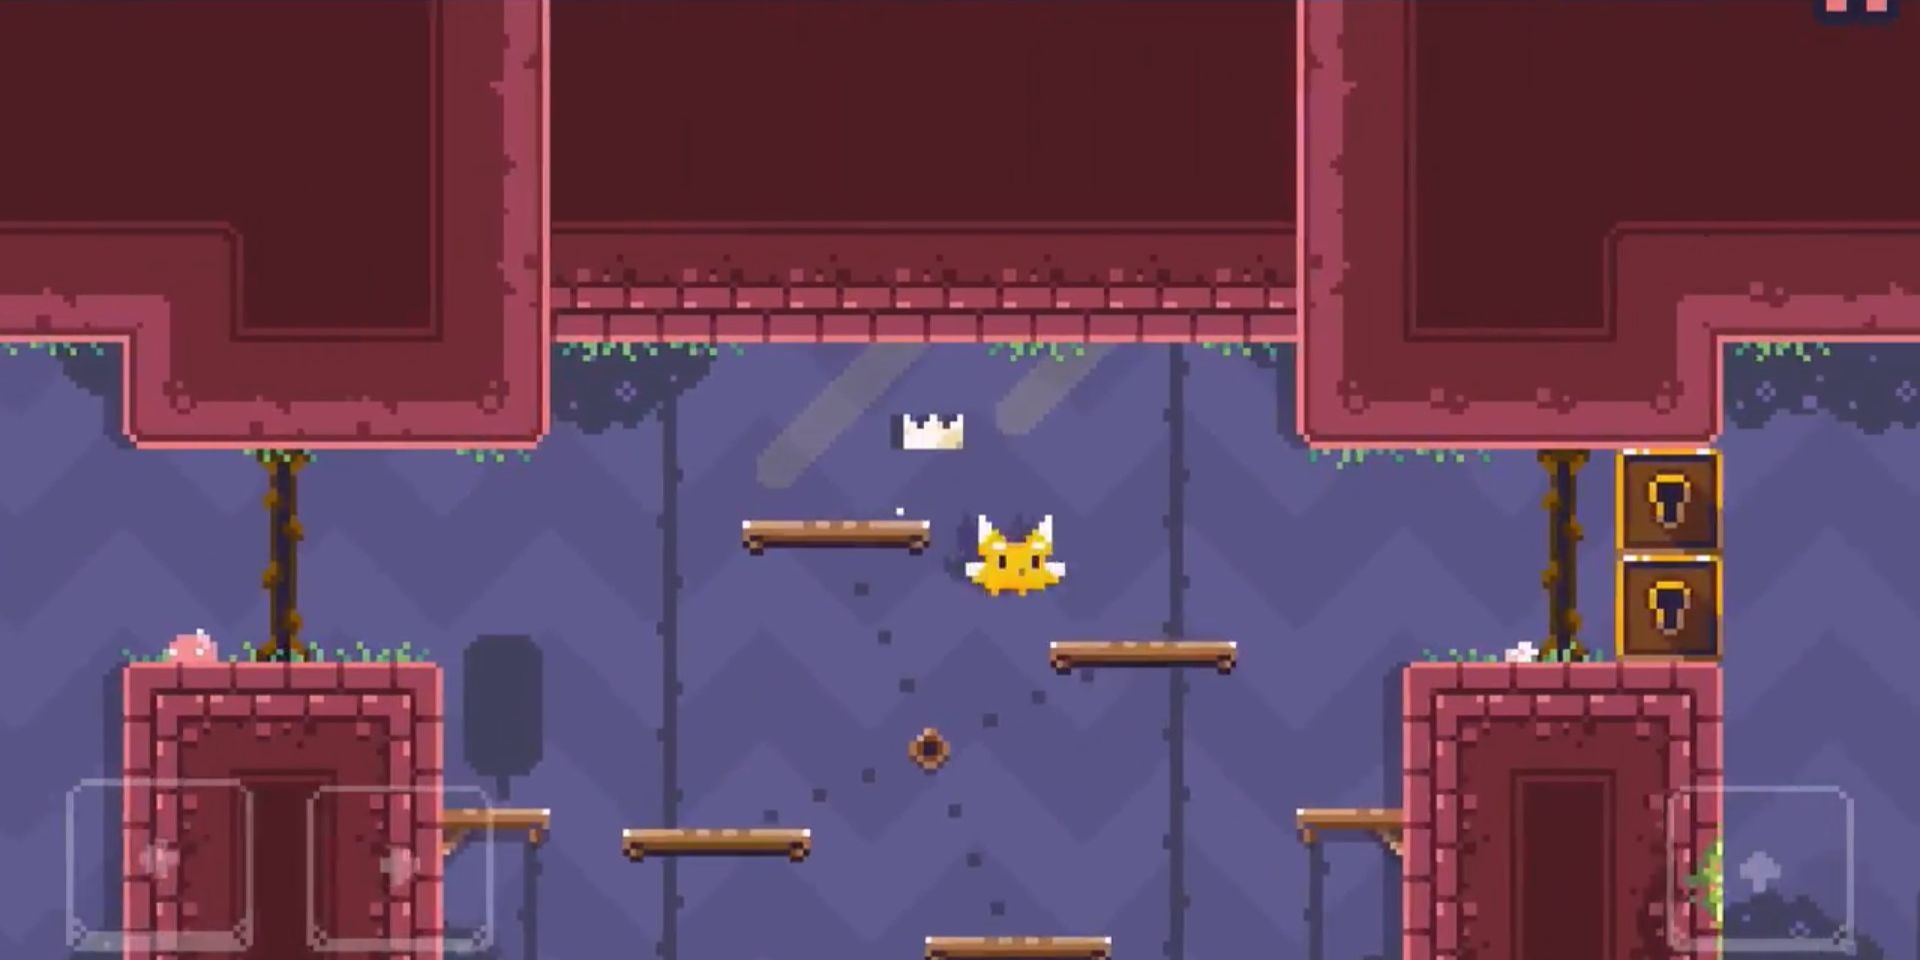 A screenshot from the Cat Bird video game